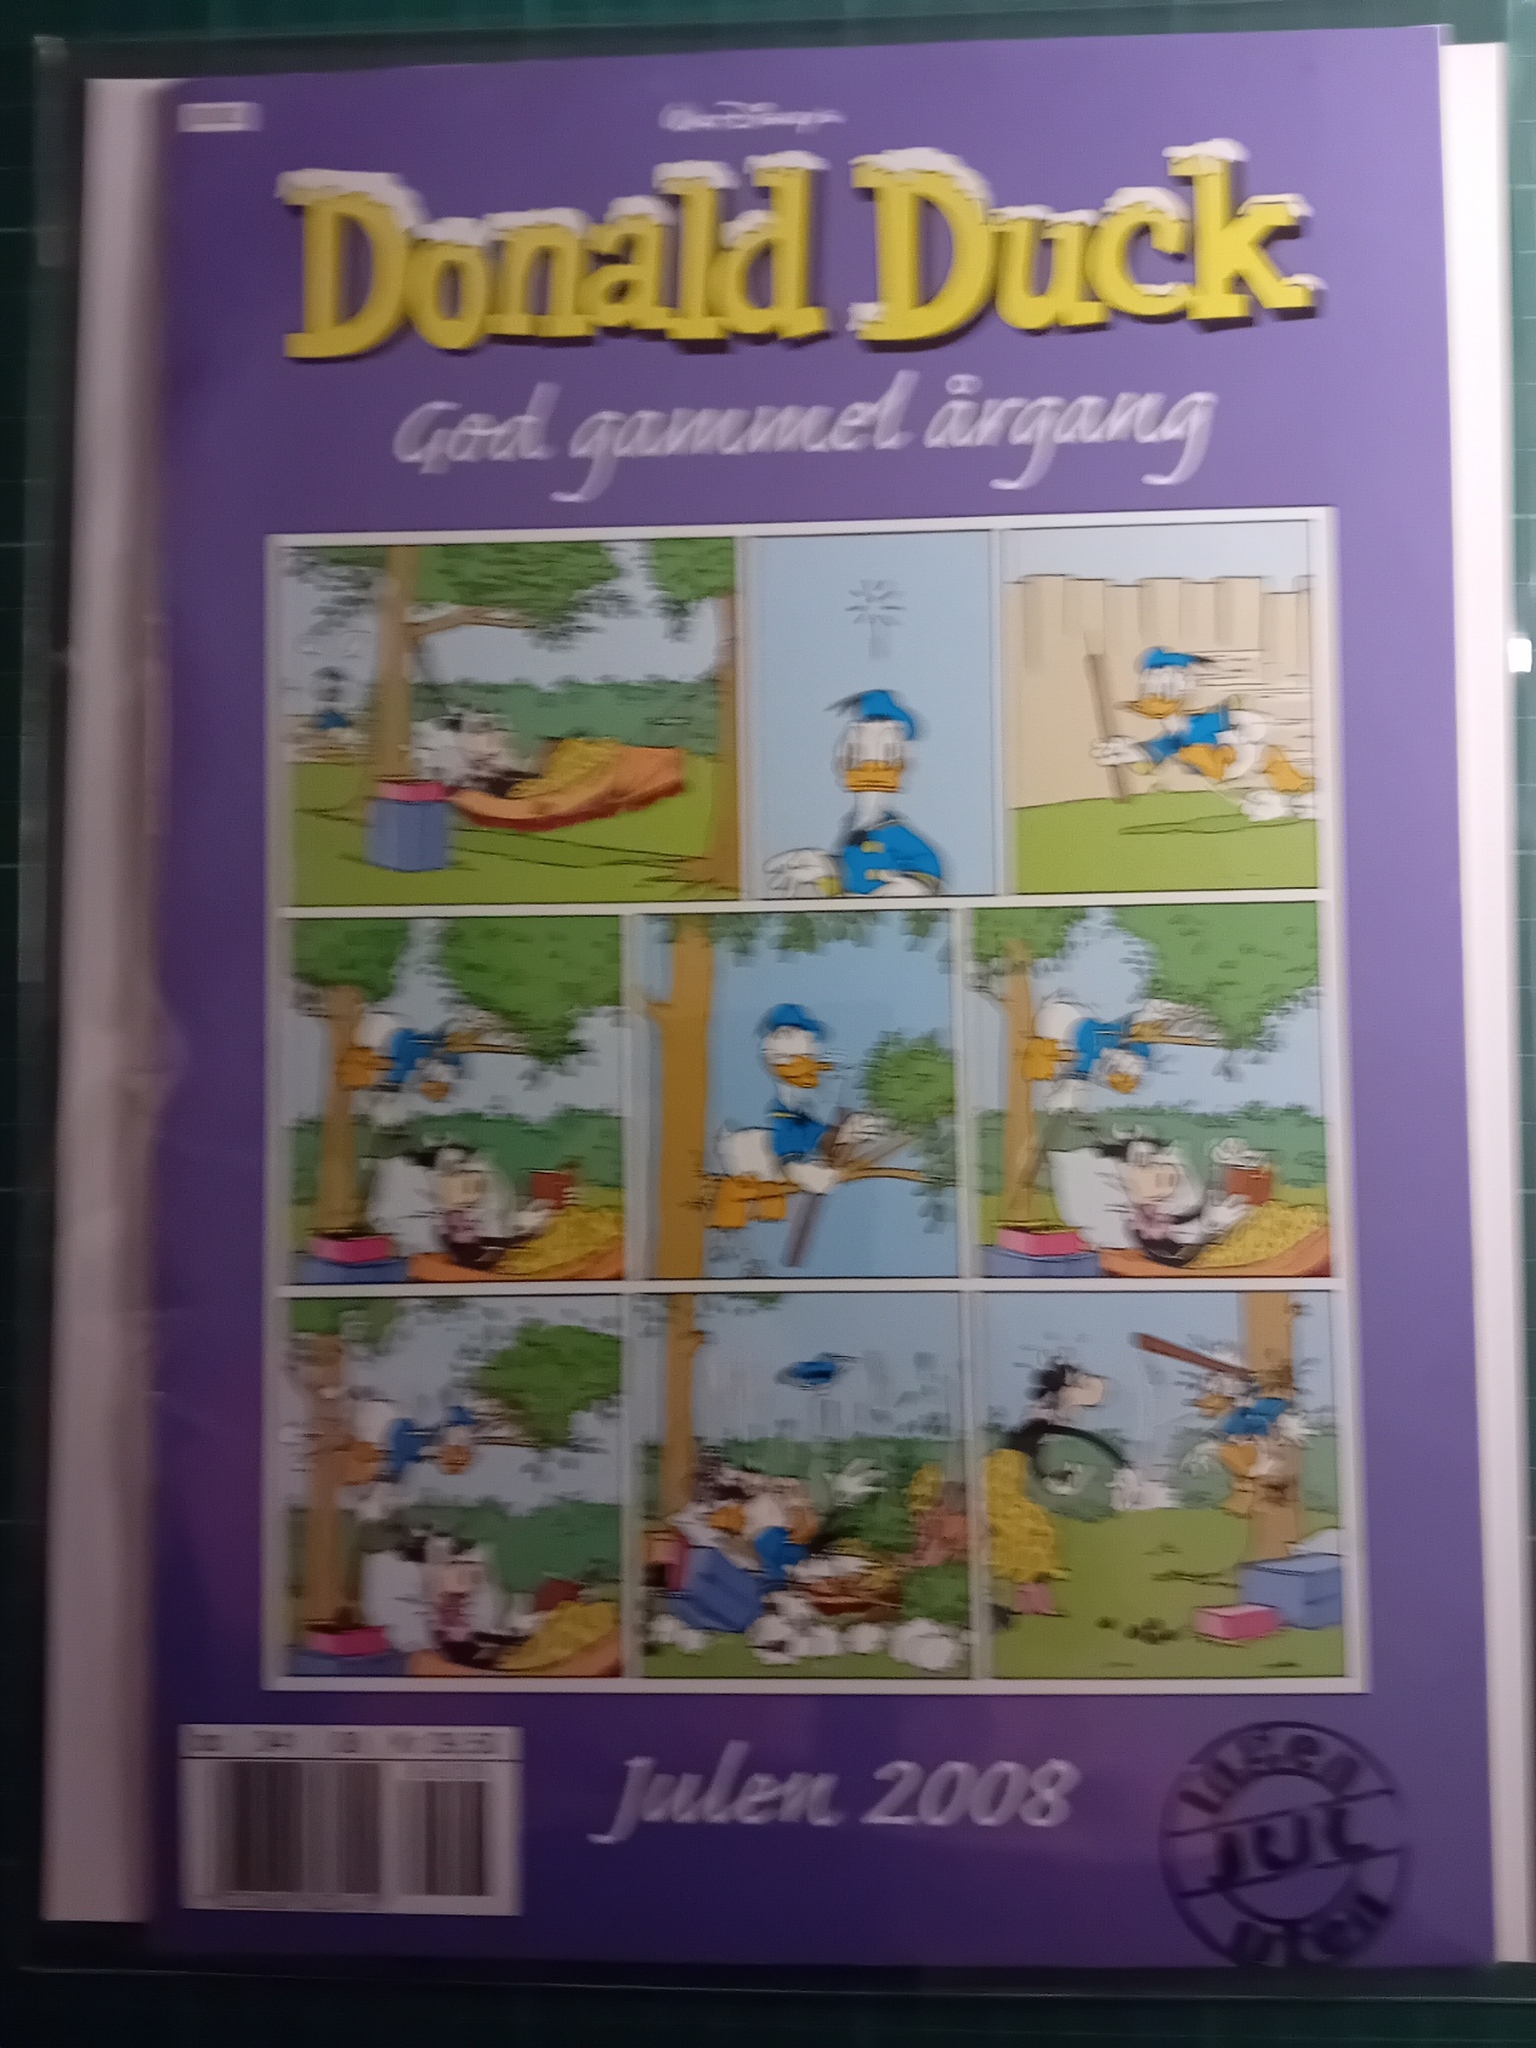 Donald Duck God gammel årgang 2008 m/plastlomme og bakark